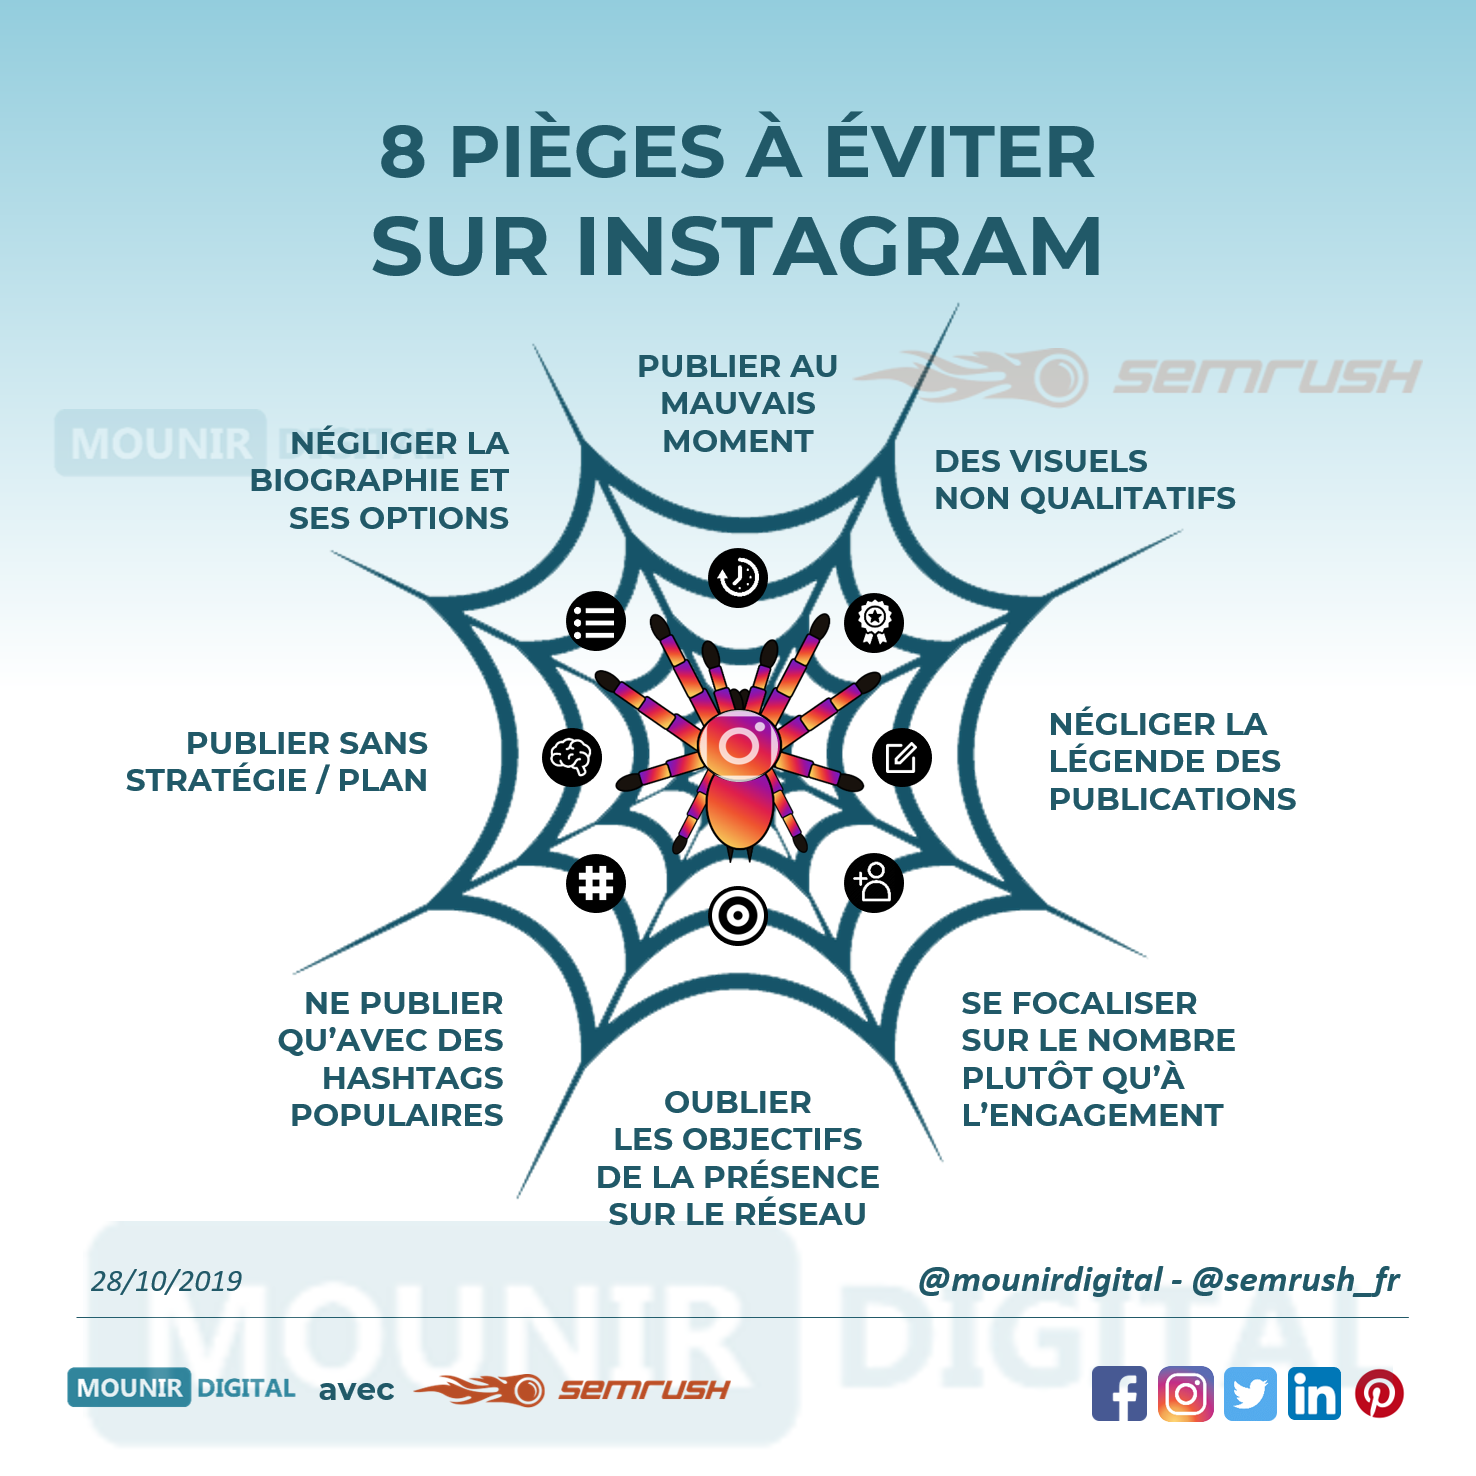 Mounir Digital - Les pièges à éviter sur Instagram - Infographies originales